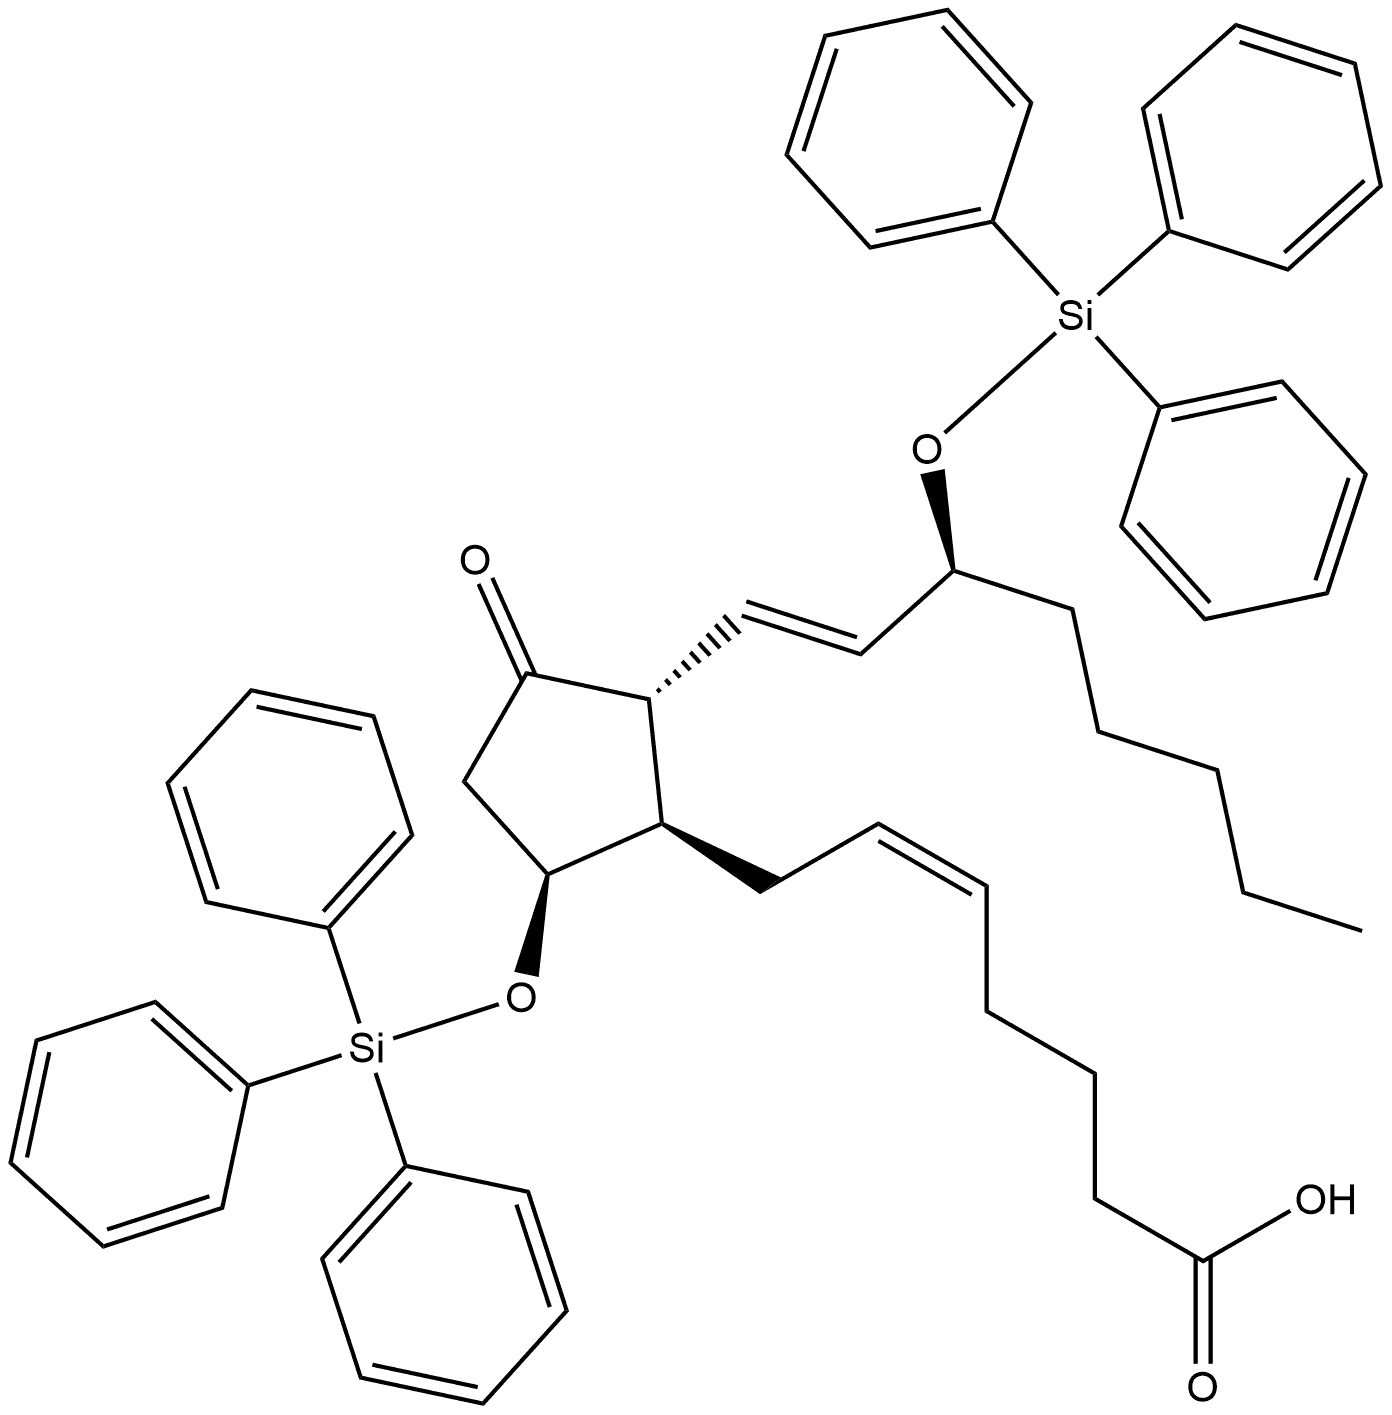 Prosta-5,13-dien-1-oic acid, 11-oxo-9,15-bis[(triphenylsilyl)oxy]-, (5Z,9α,13E,15S)- (9CI)